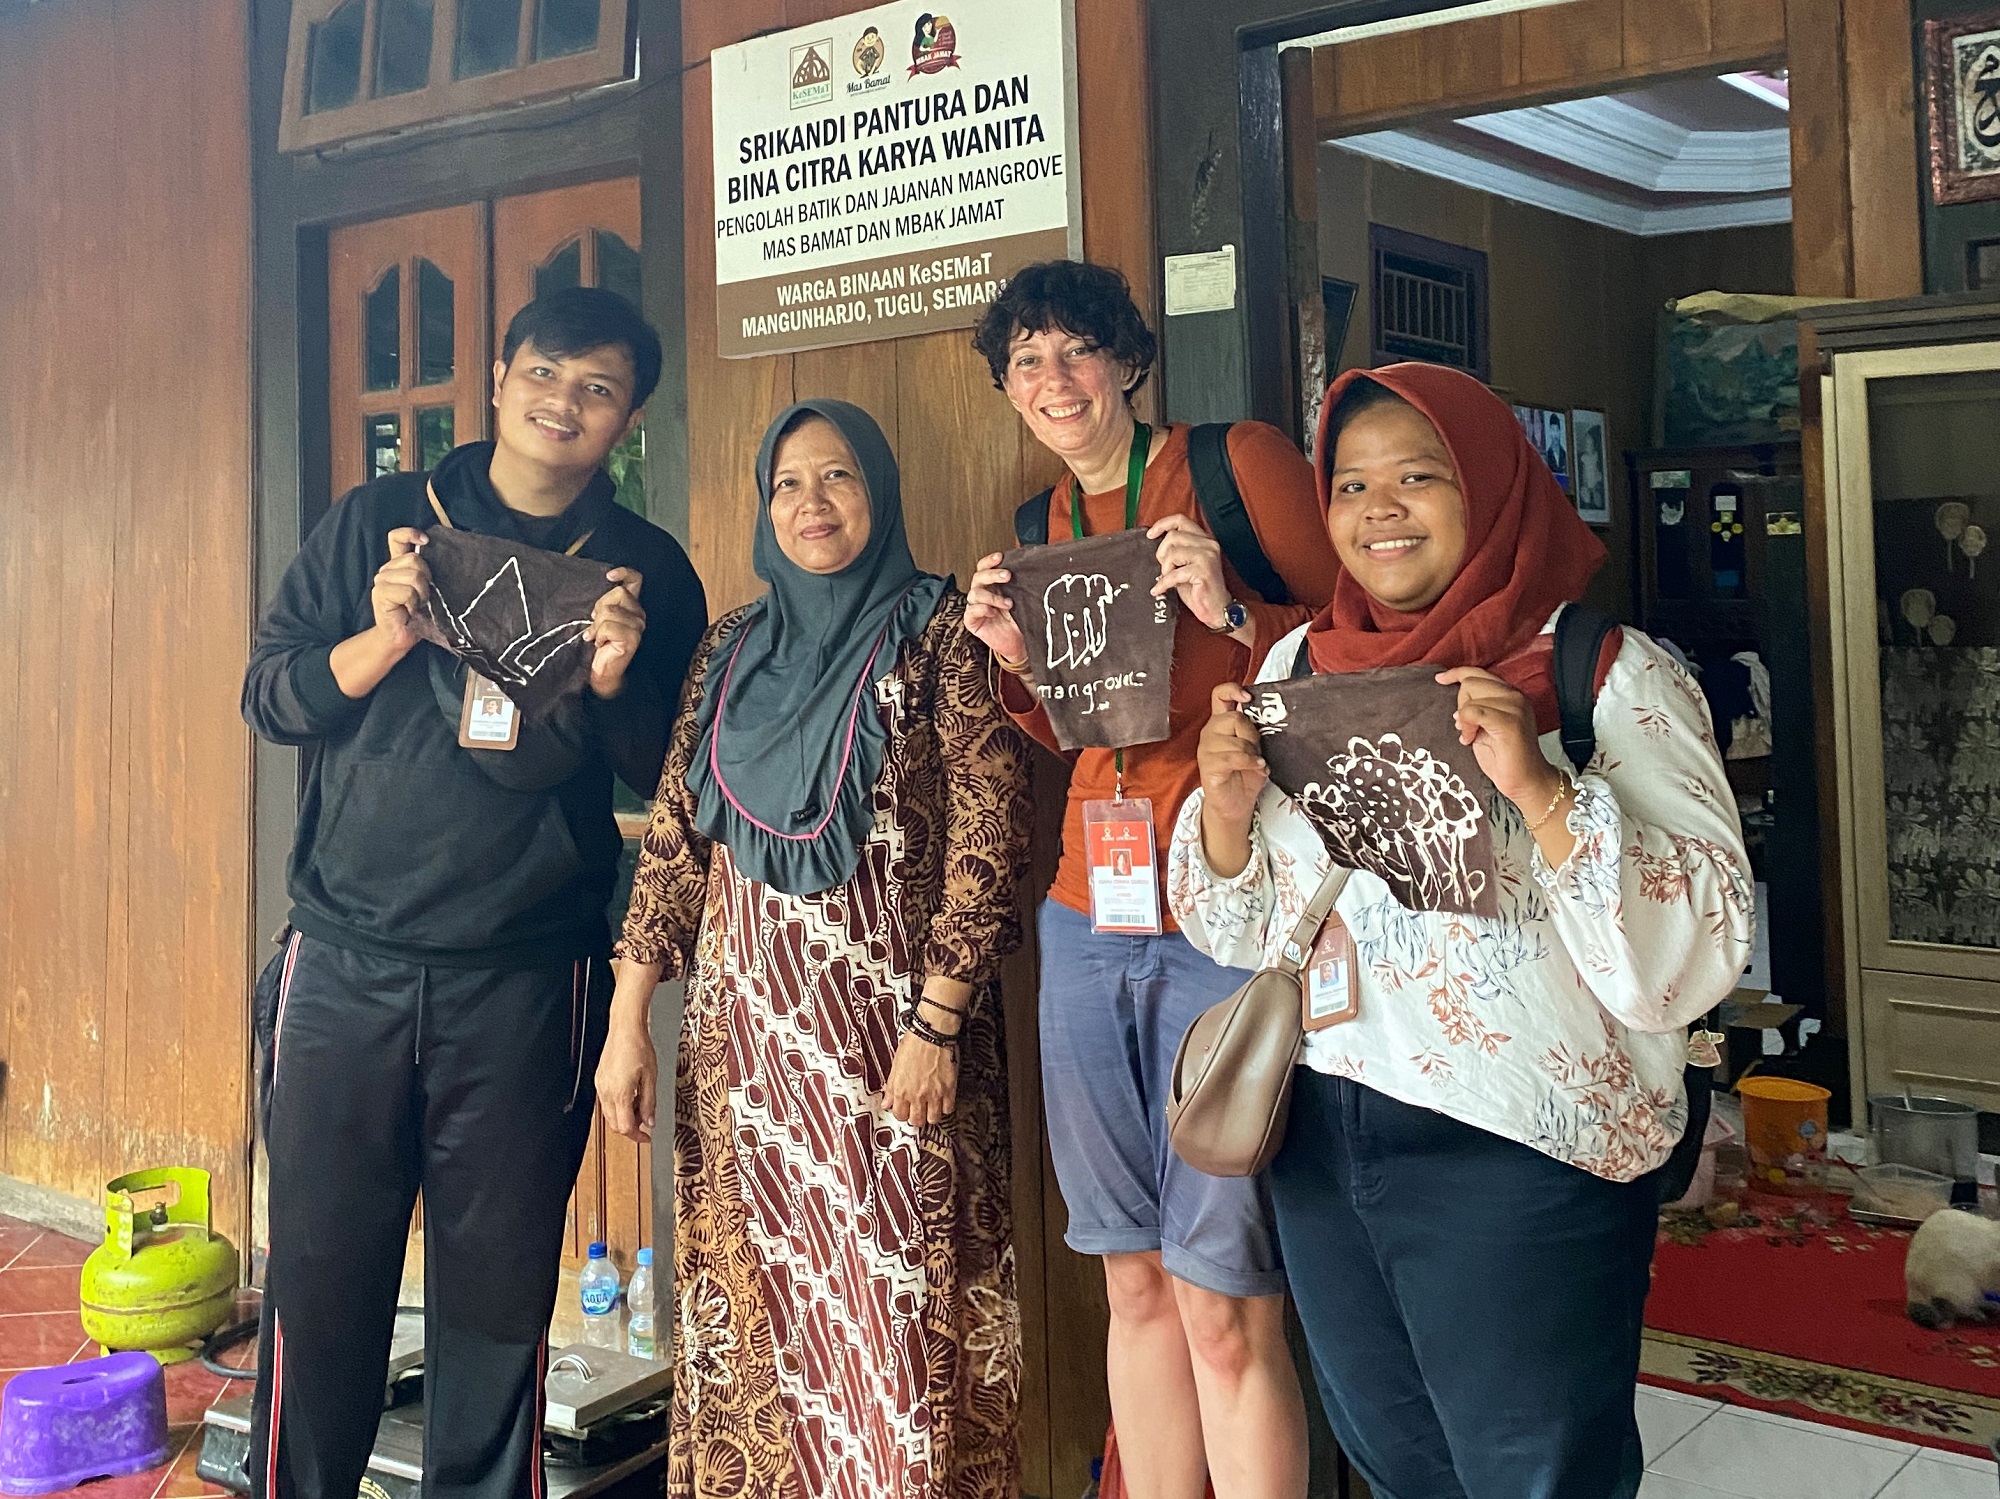 IKAMaT Dampingi Pelatihan Batik, Jajanan dan Kopi Mangrove Mahasiswa Griffith University Australia di Semarang Mangrove Center